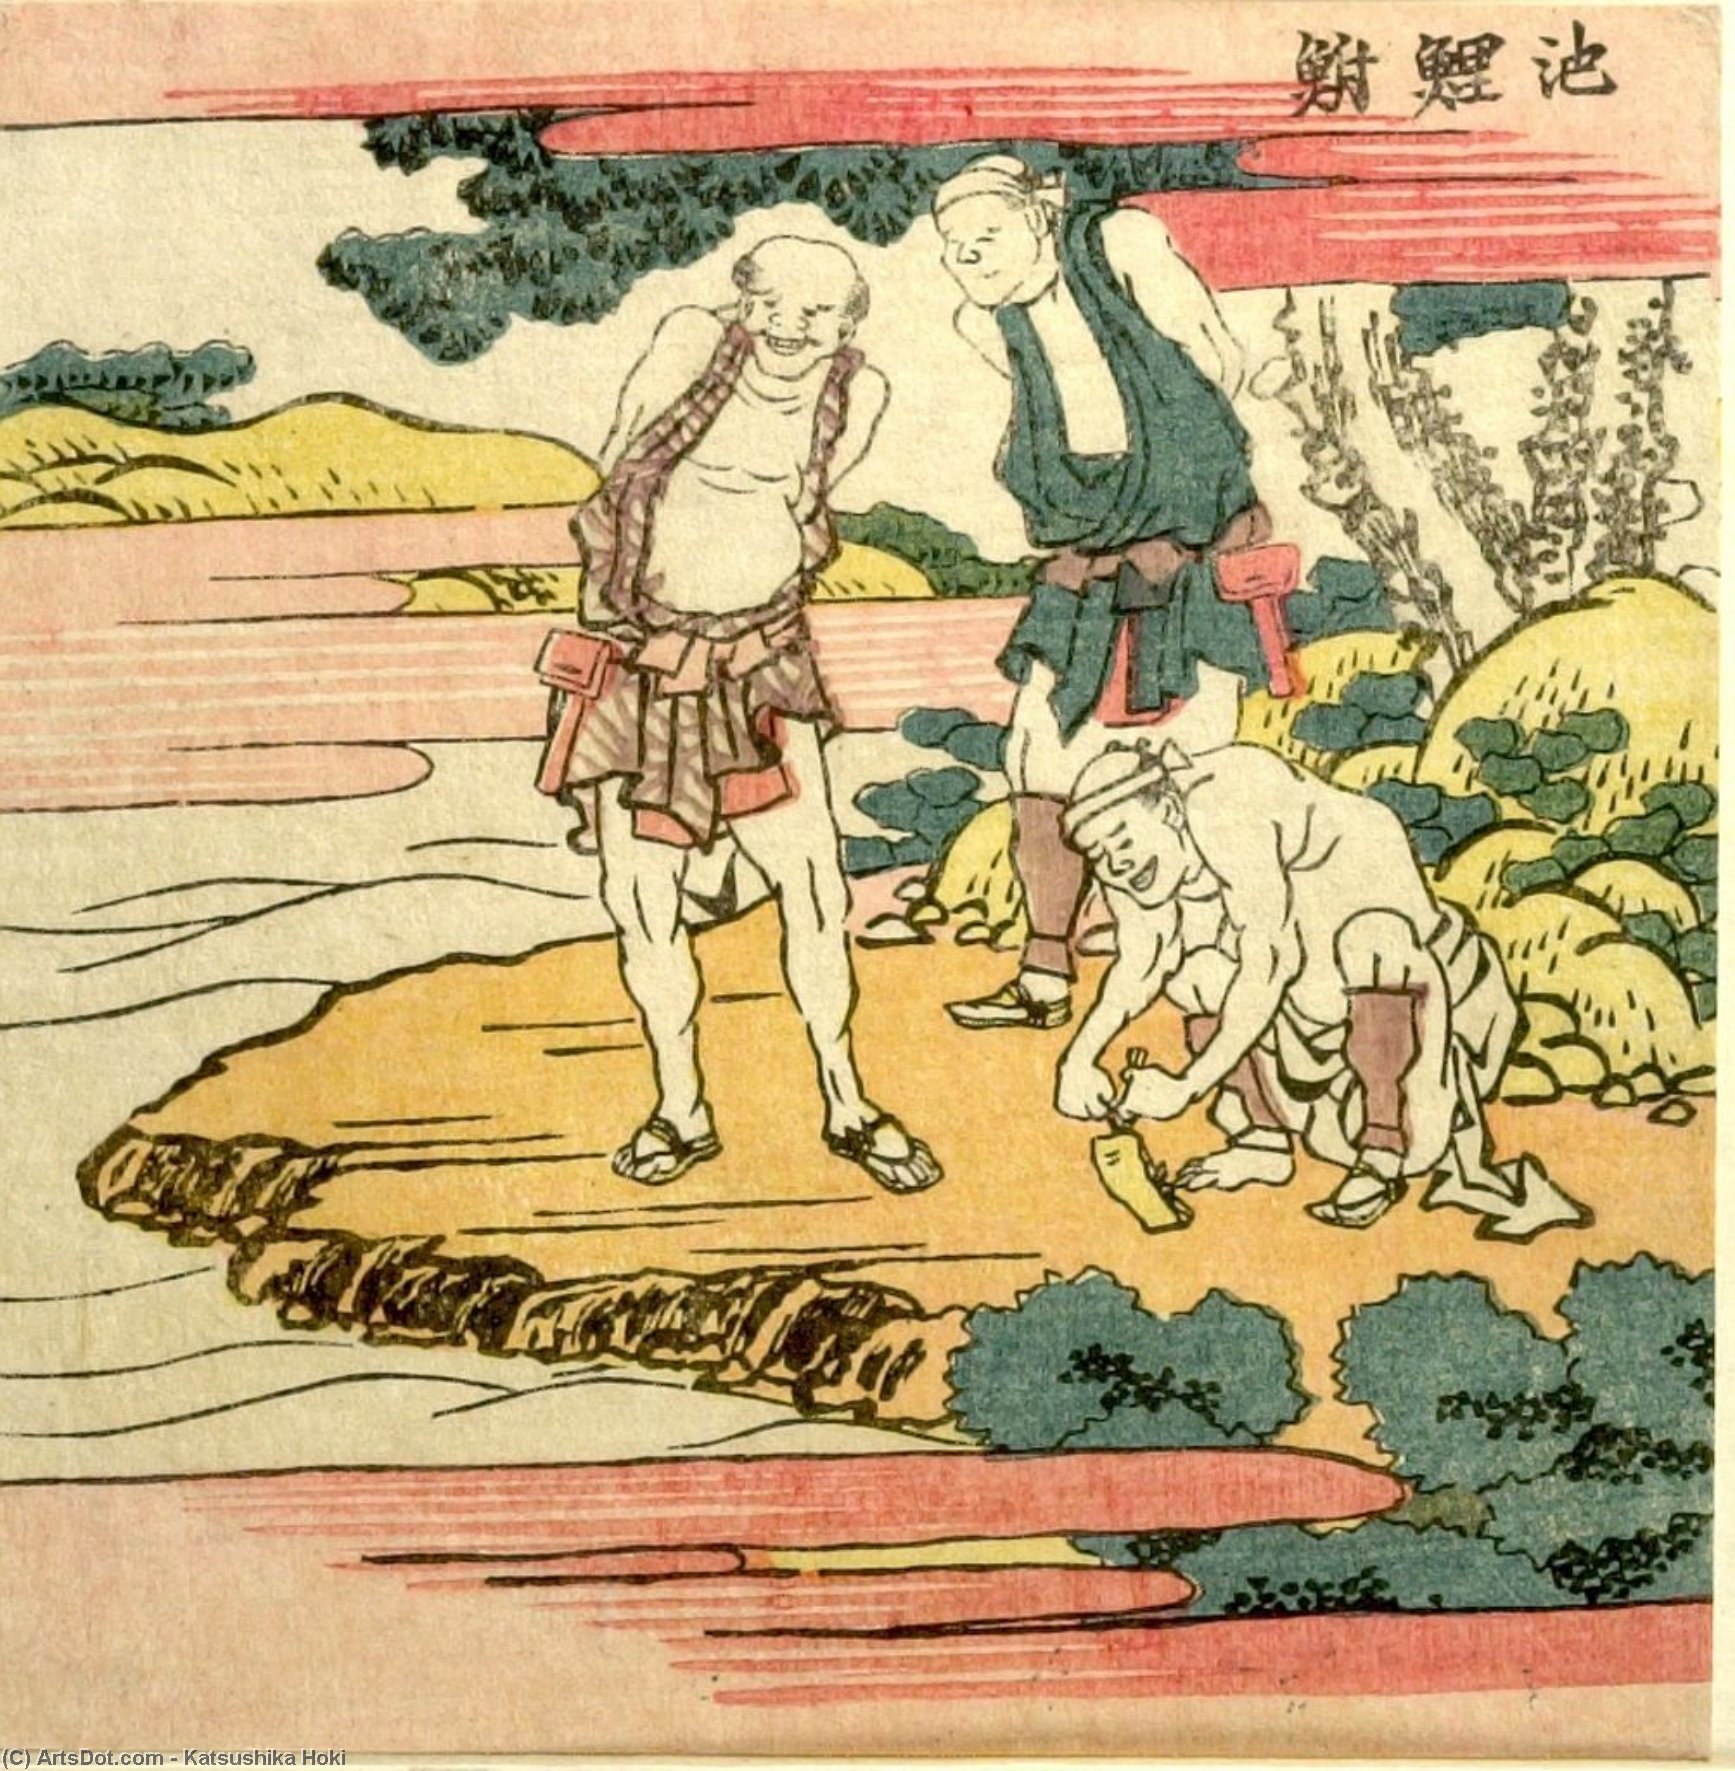 WikiOO.org - Εγκυκλοπαίδεια Καλών Τεχνών - Ζωγραφική, έργα τέχνης Katsushika Hokusai - Three Men